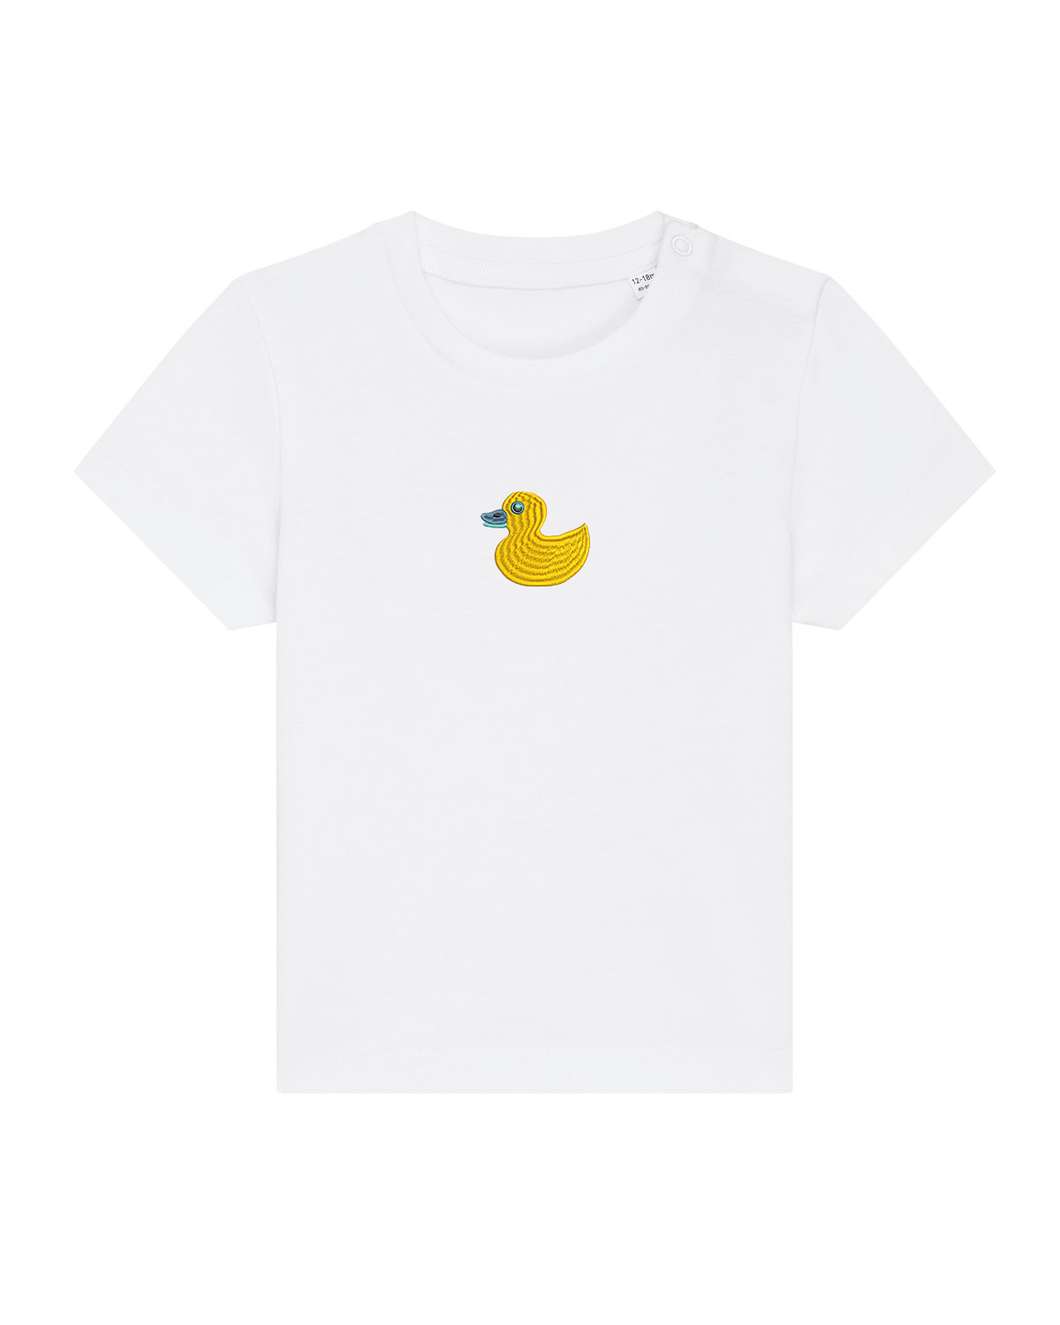 Quack, Quack 🦆 Embroidered baby tshirt